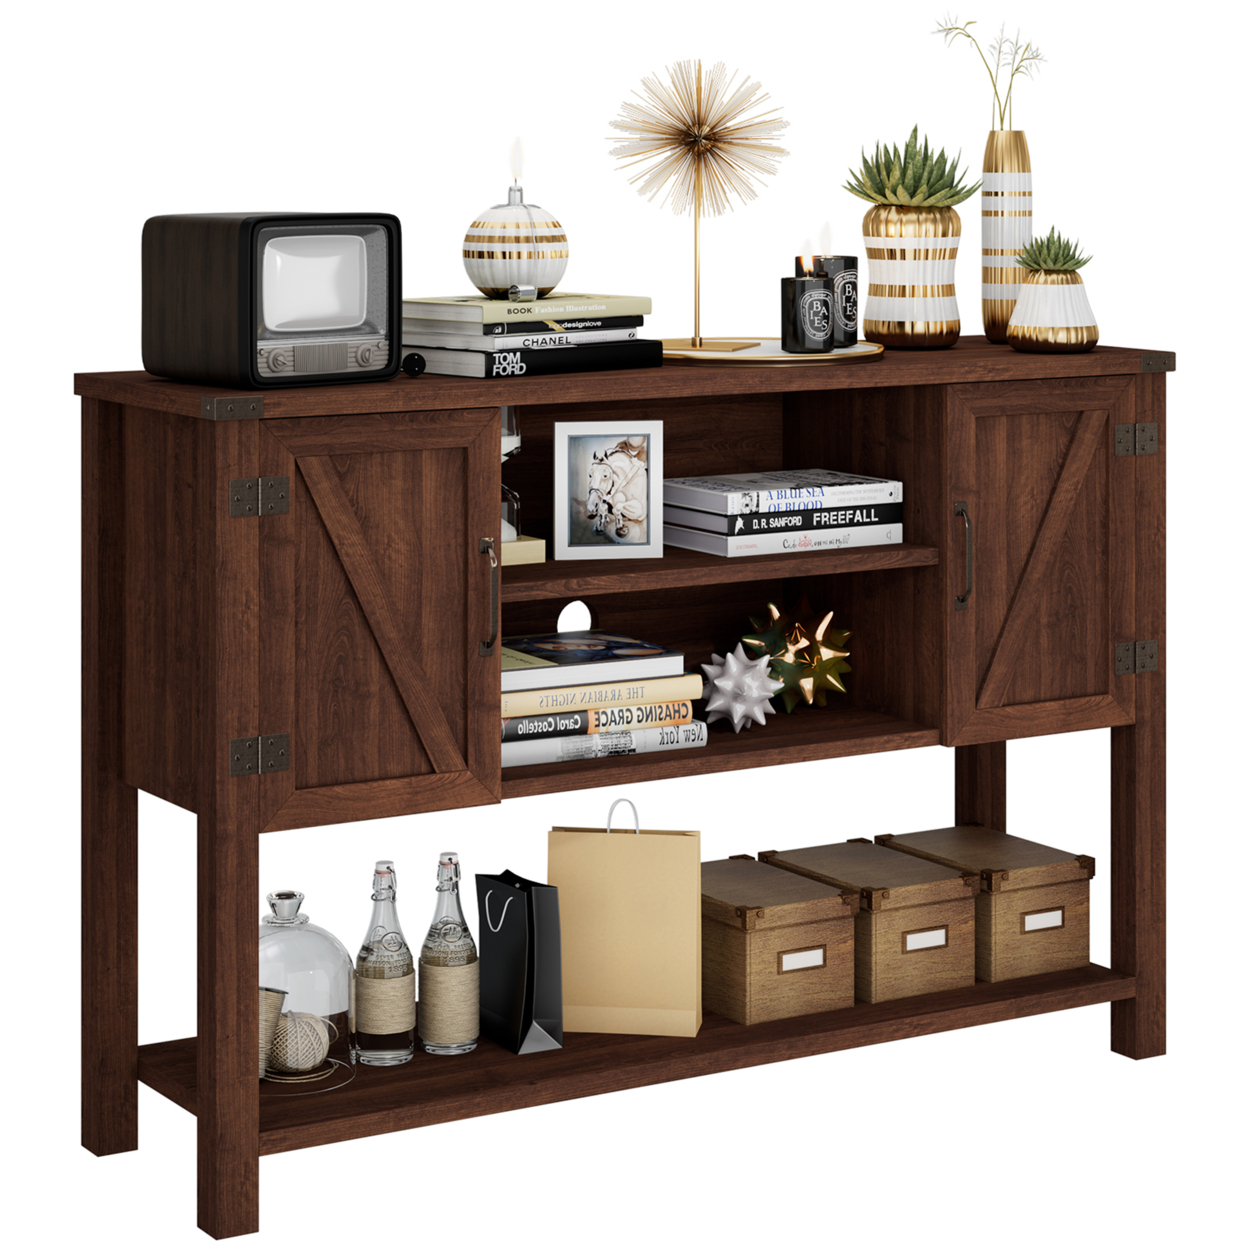 Buffet Sideboard Storage Cupboard Console Table W/ Open Shelf & Side Cabinets Brown